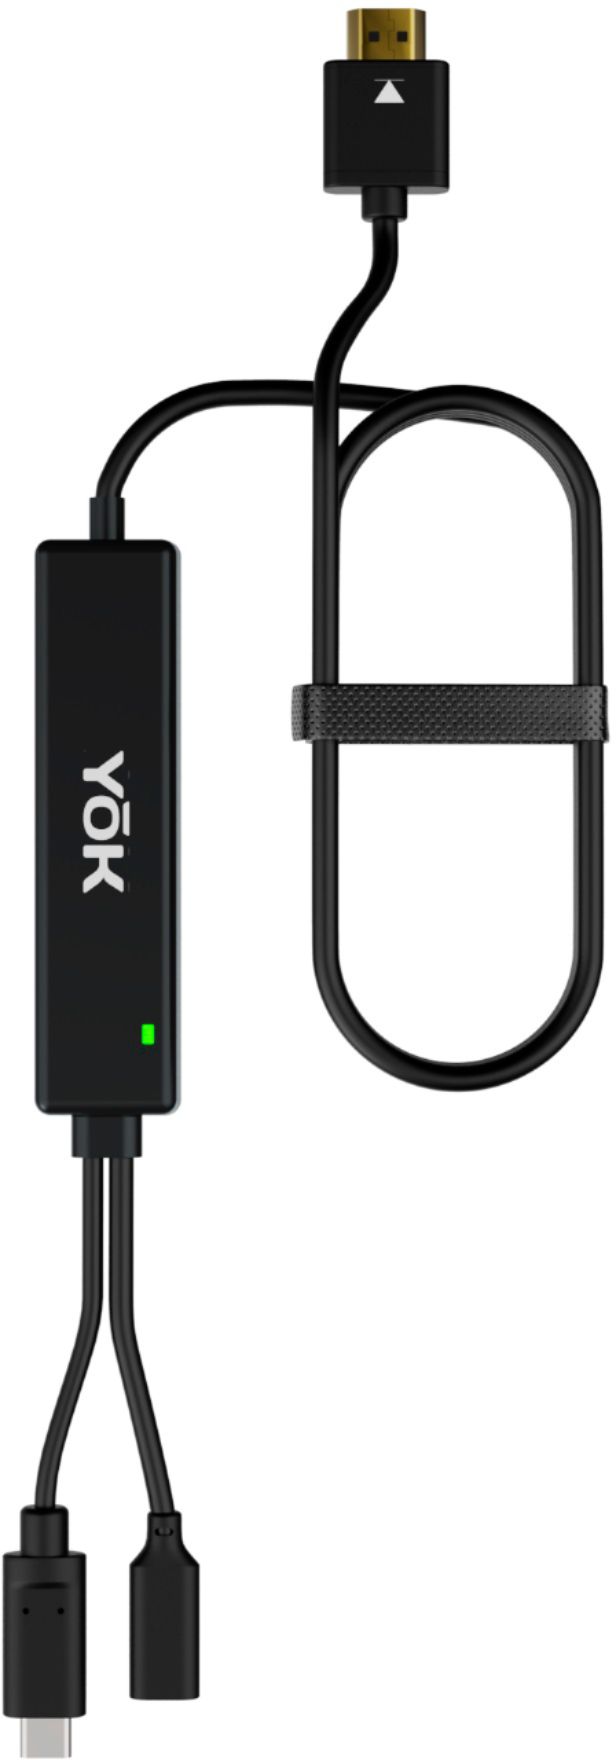 Best Buy: Yok Portable TV Dock Black EB779